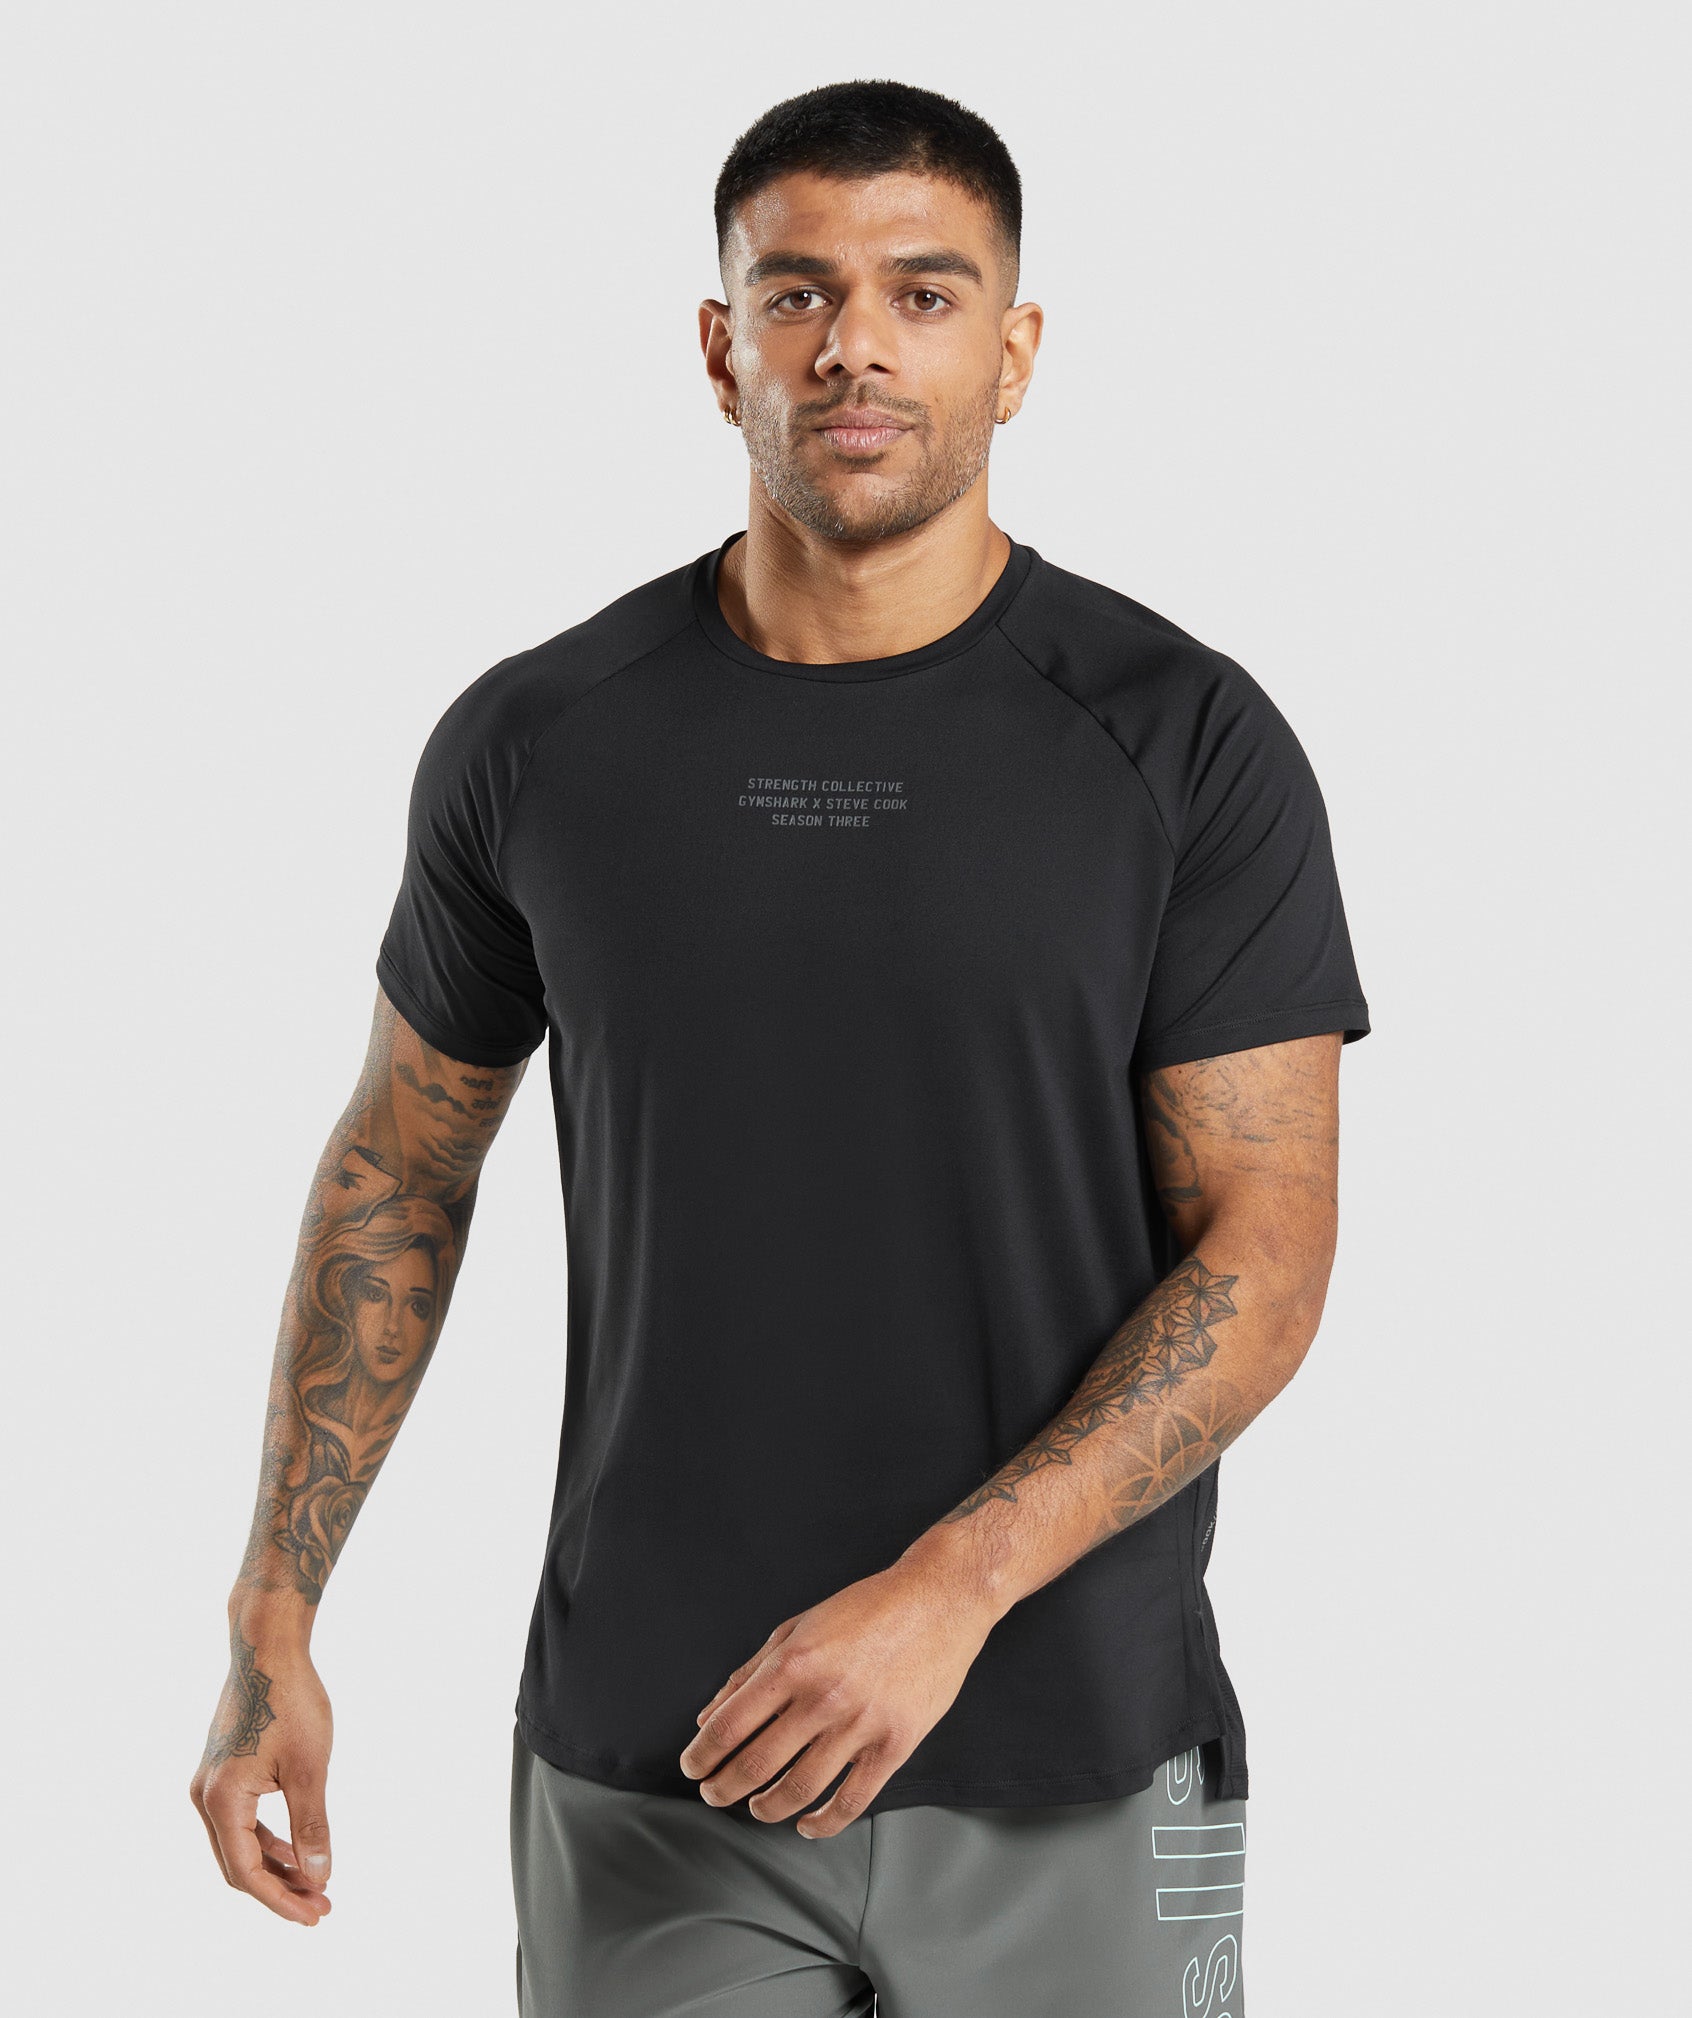 Gymshark//Steve Cook T-Shirt in Black